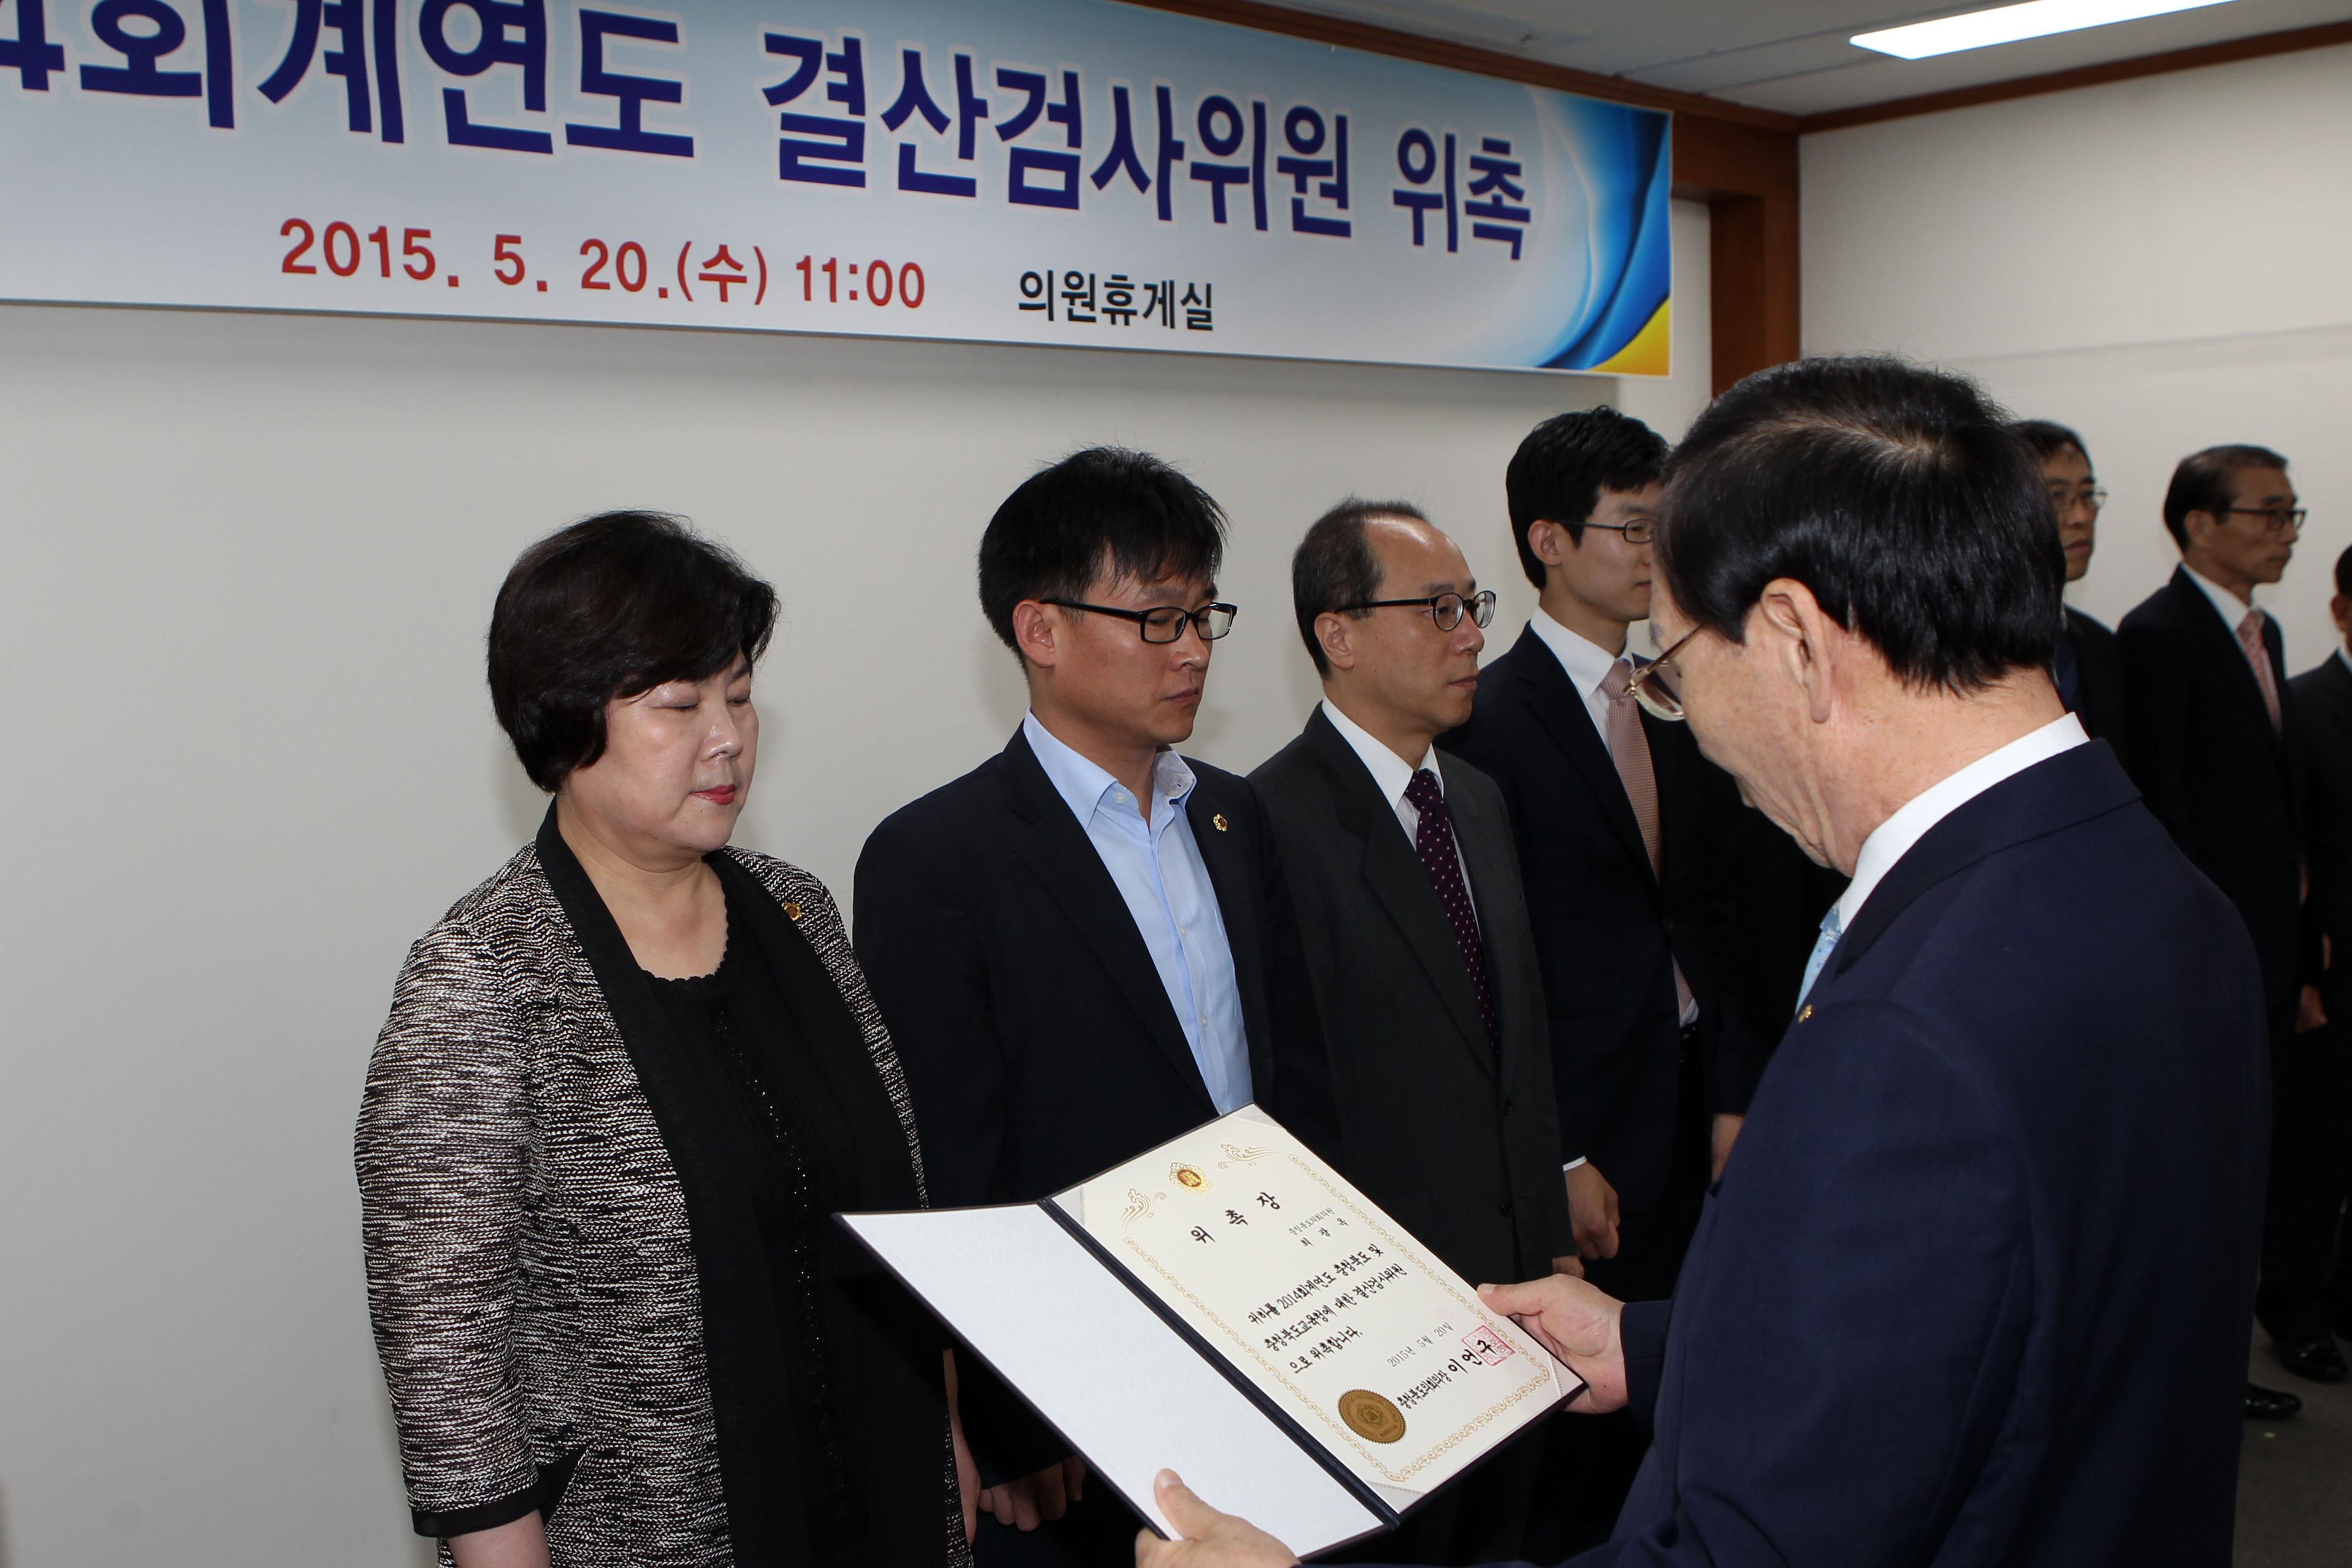 충청북도의회 2014회계연도 결산검사 돌입 - 2